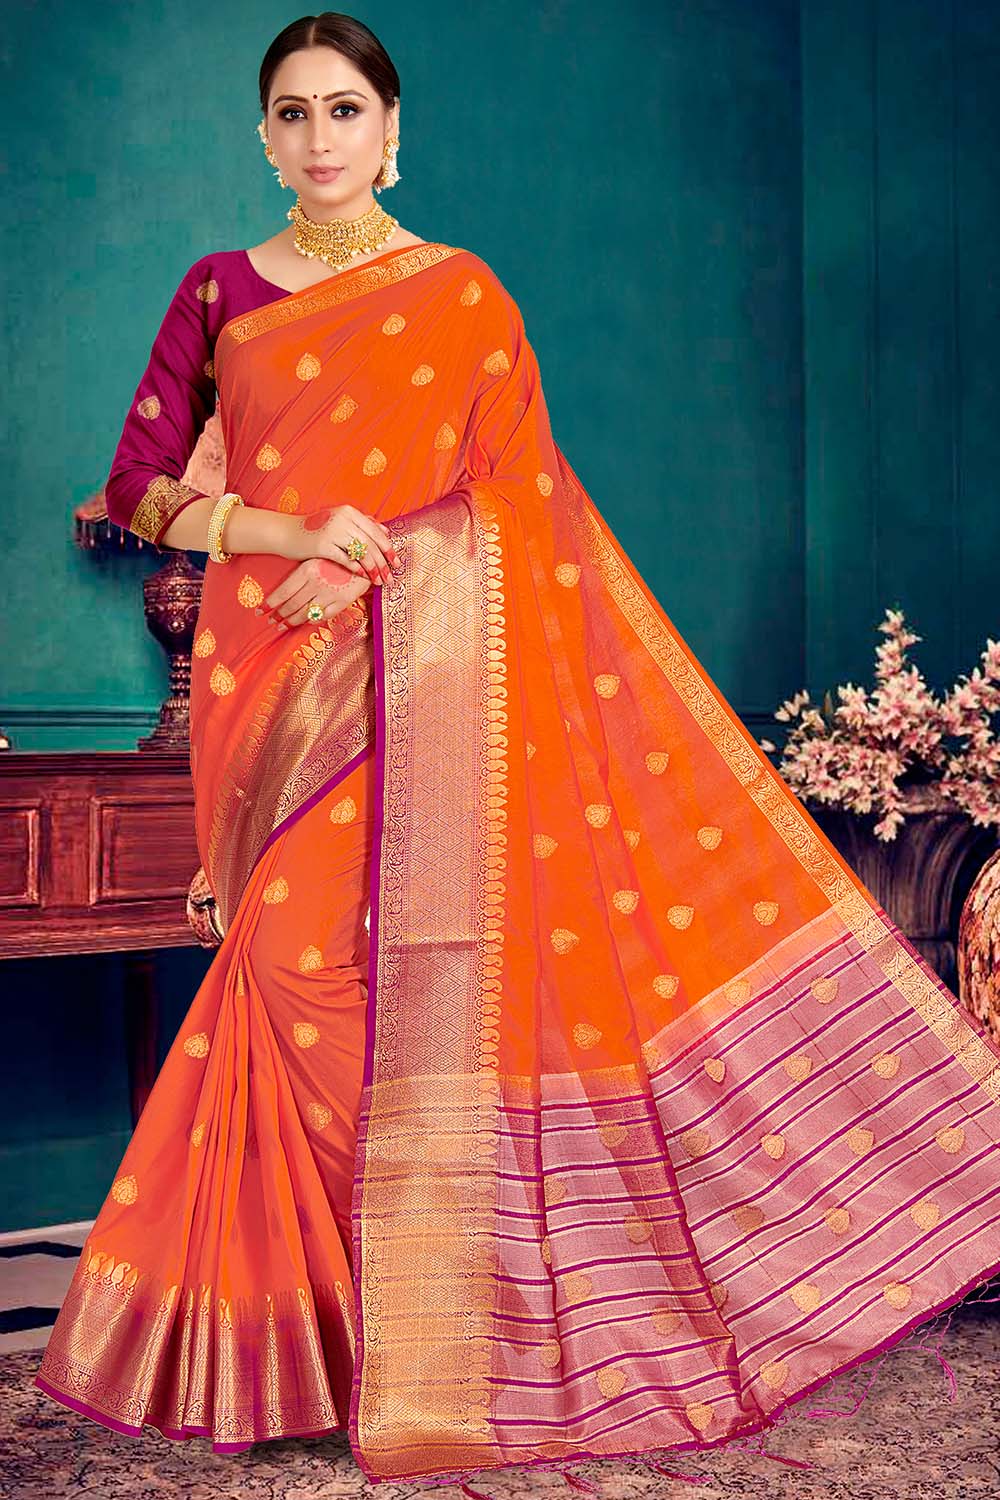 KARAGIRI Womens Cotton Orange Saree With Blouse Piece : Amazon.in: Fashion